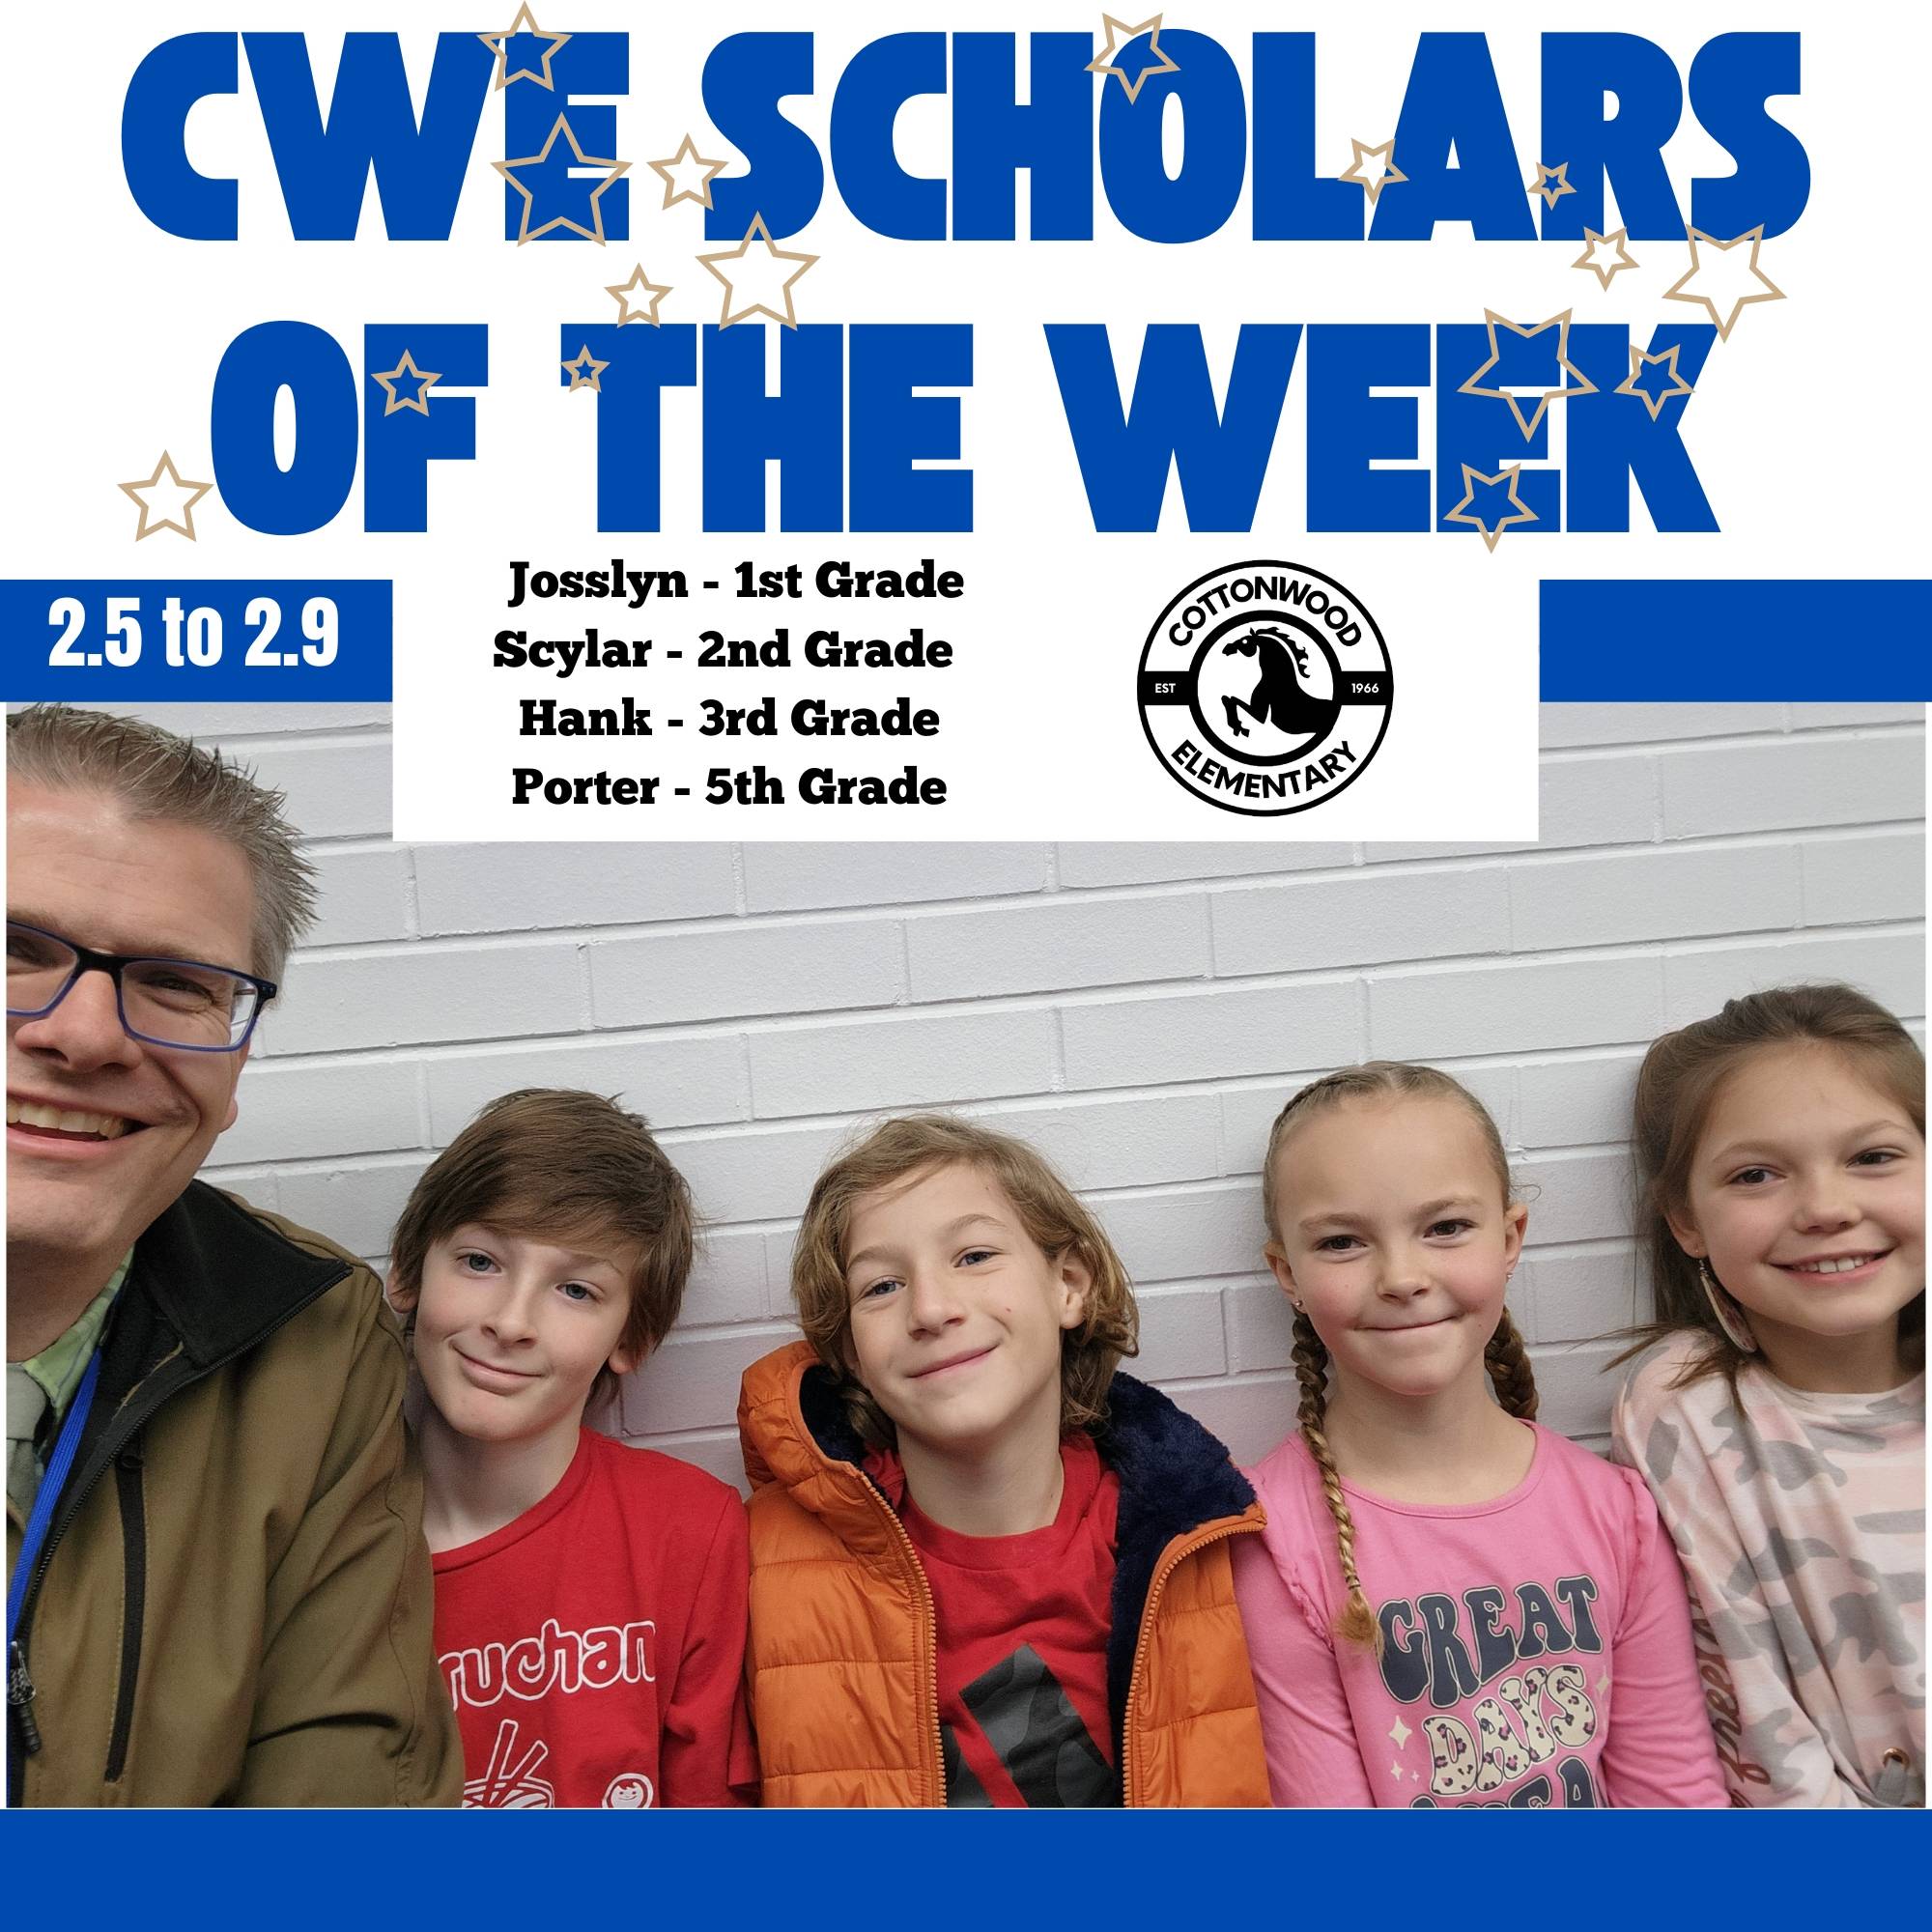 CWE-Scholars-of-the-Week-2.5-to-2.9.jpg